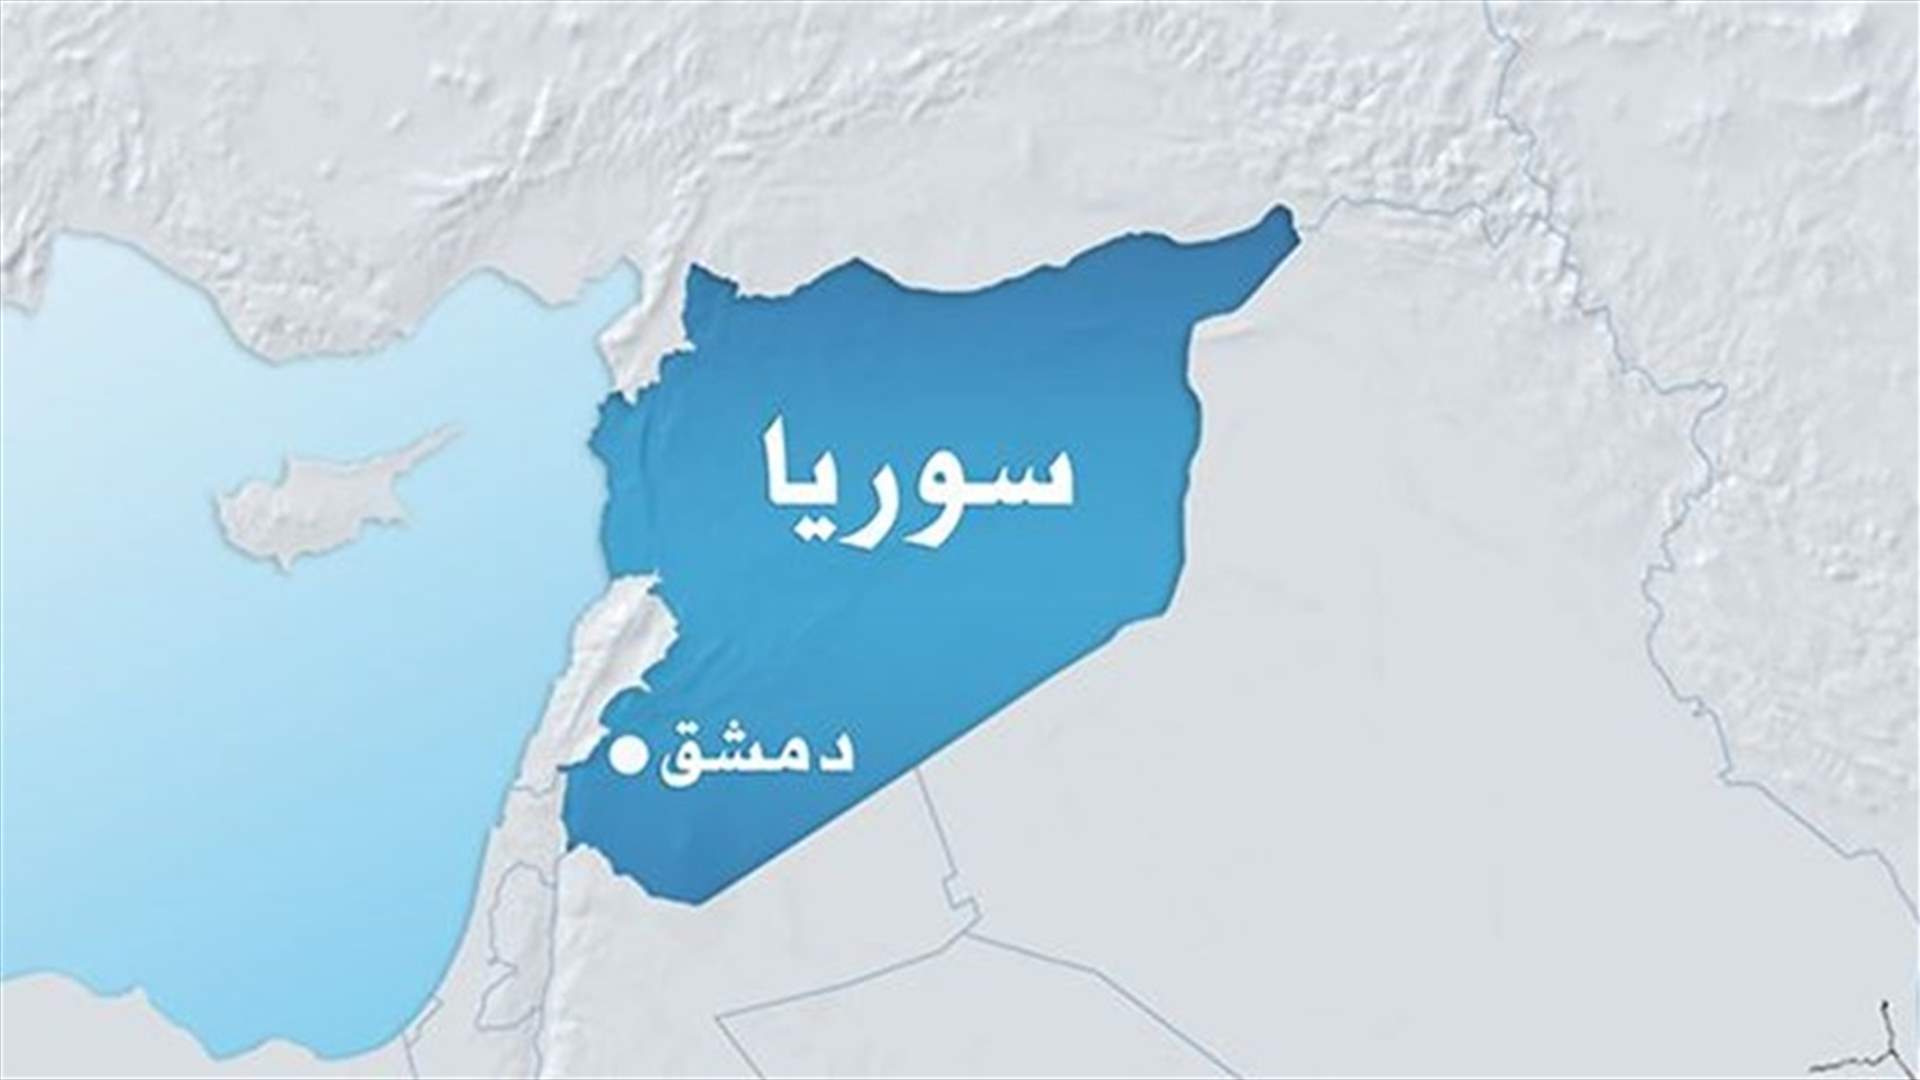 غارات غير مسبوقة على معقل للمعارضة المسلحة شرق دمشق